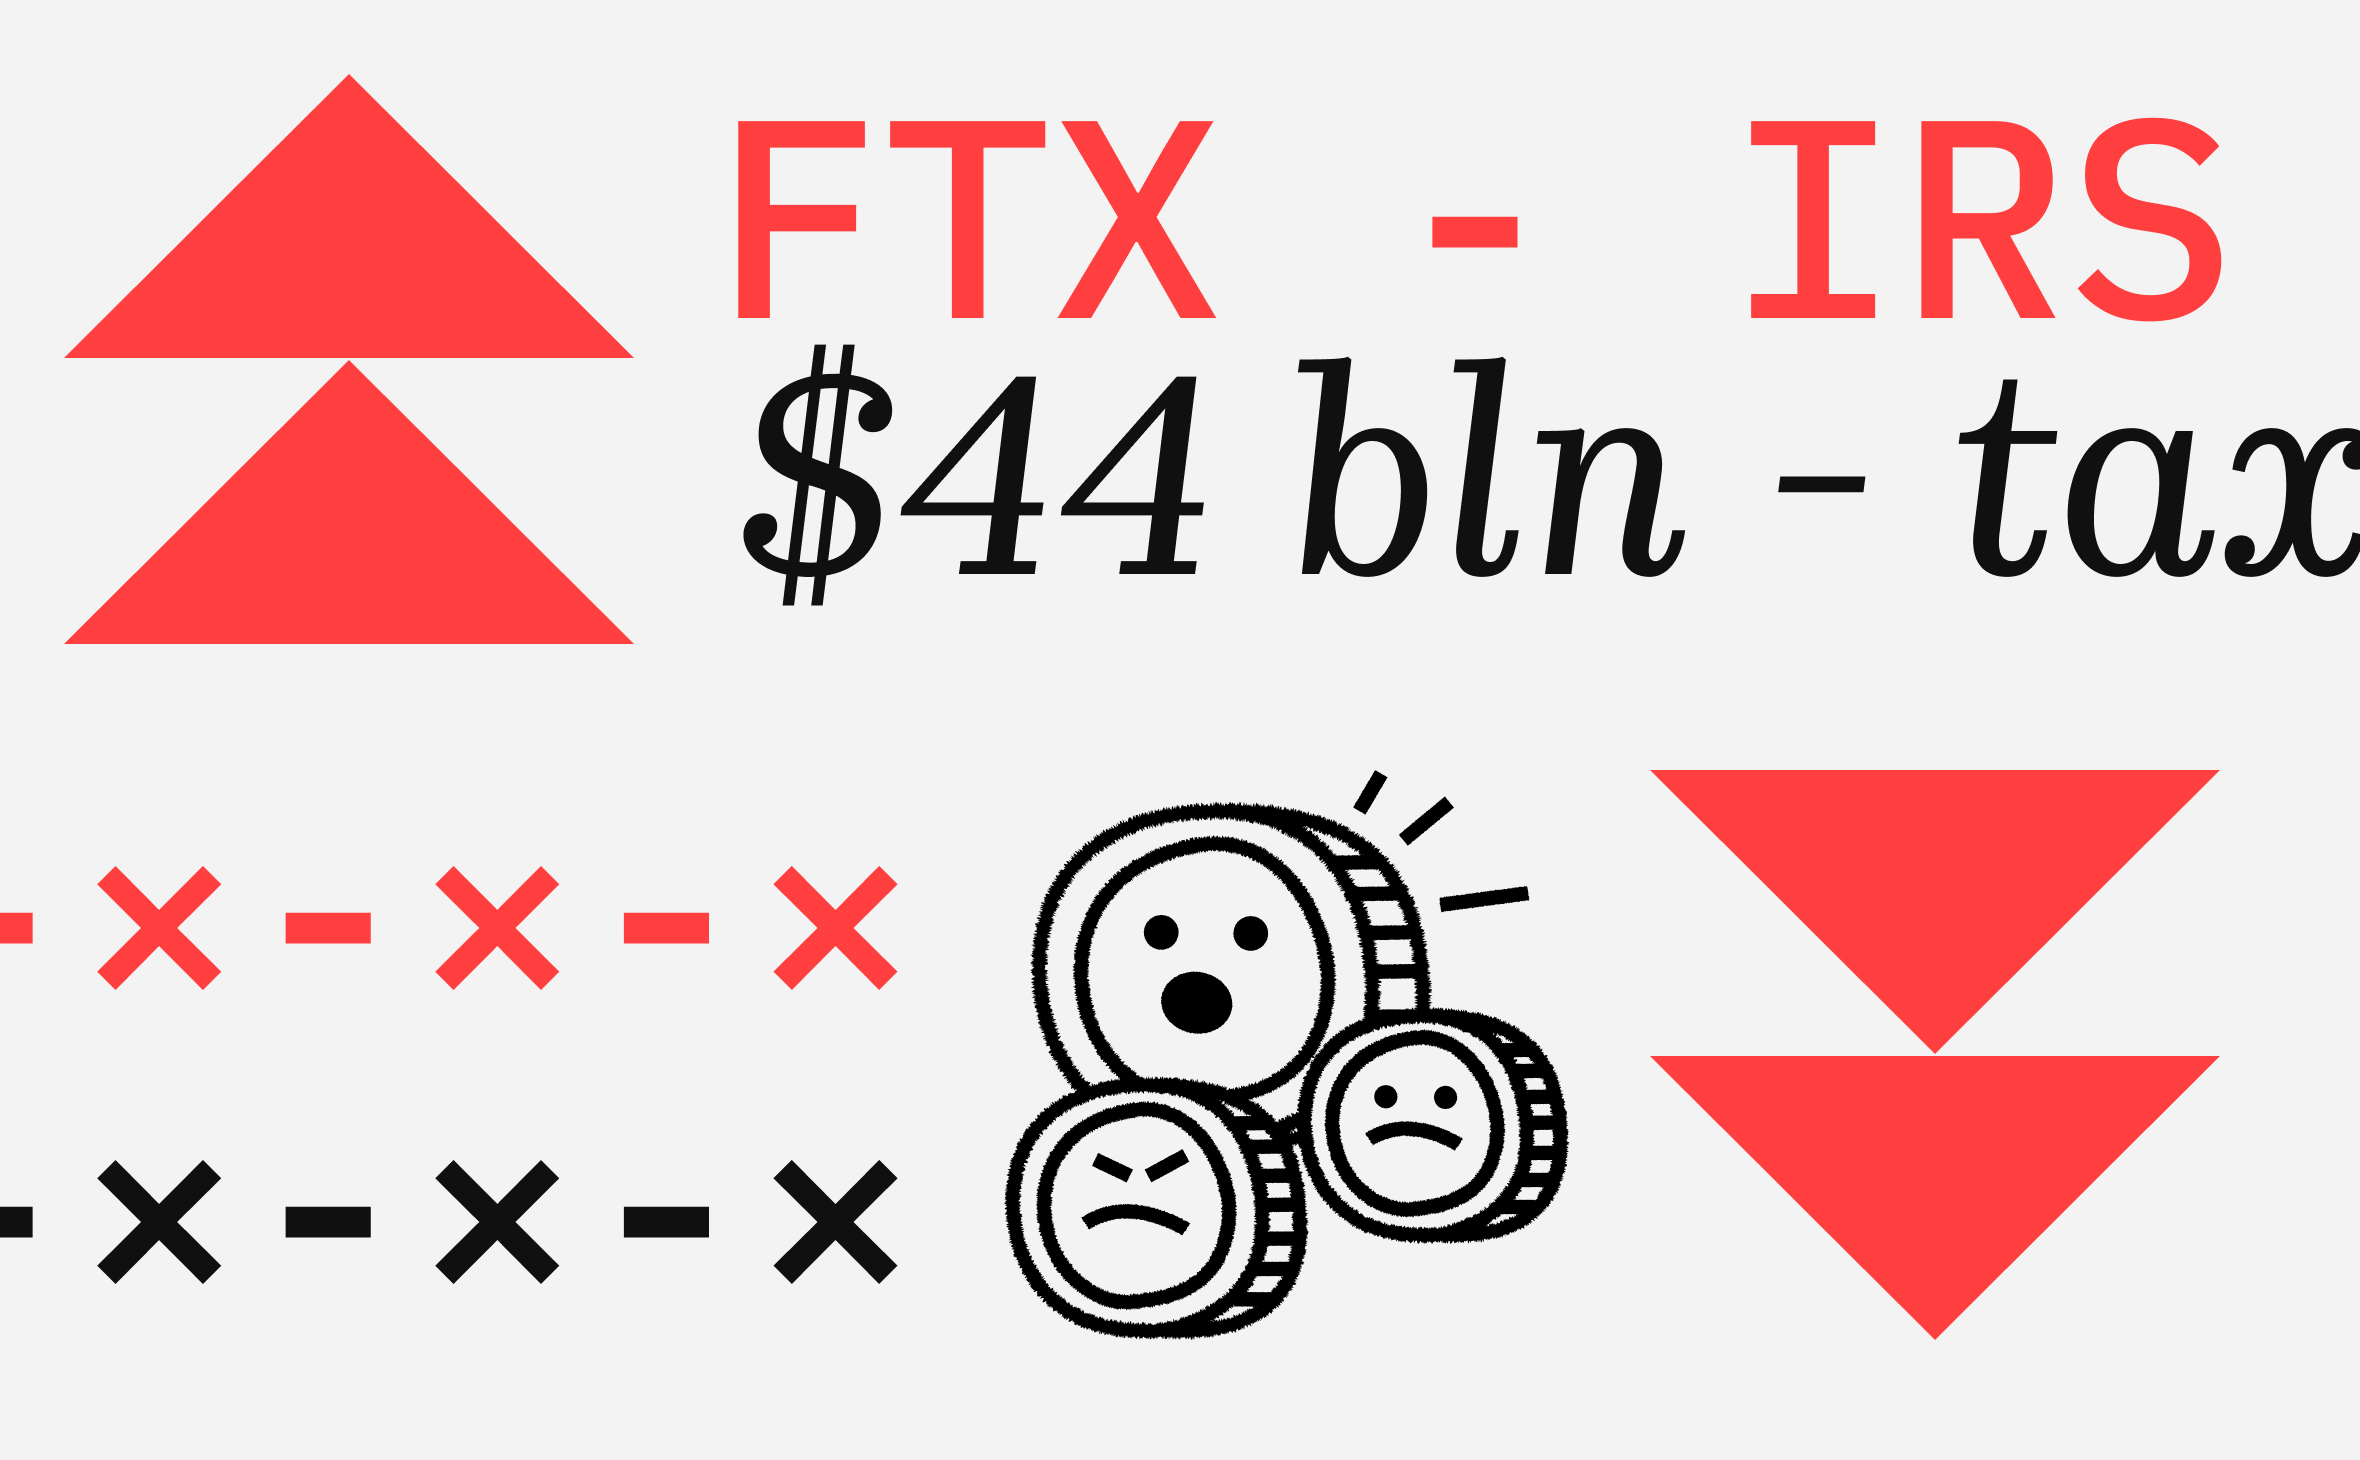 Налоговое управление США подало иски на $44 млрд к группе компаний FTX